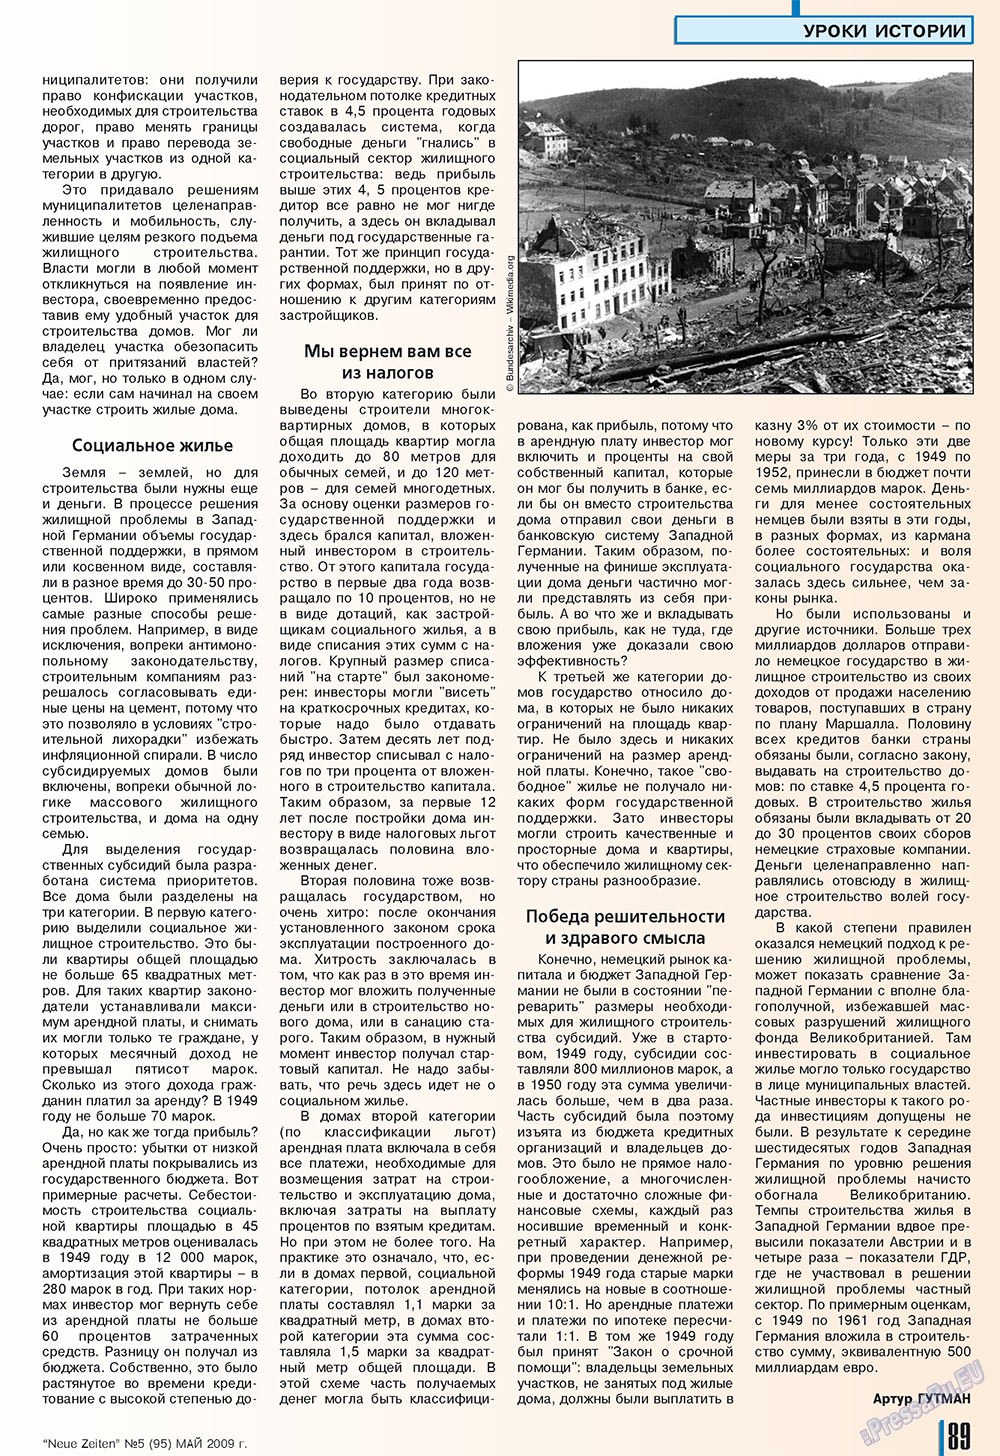 Neue Zeiten, журнал. 2009 №5 стр.89